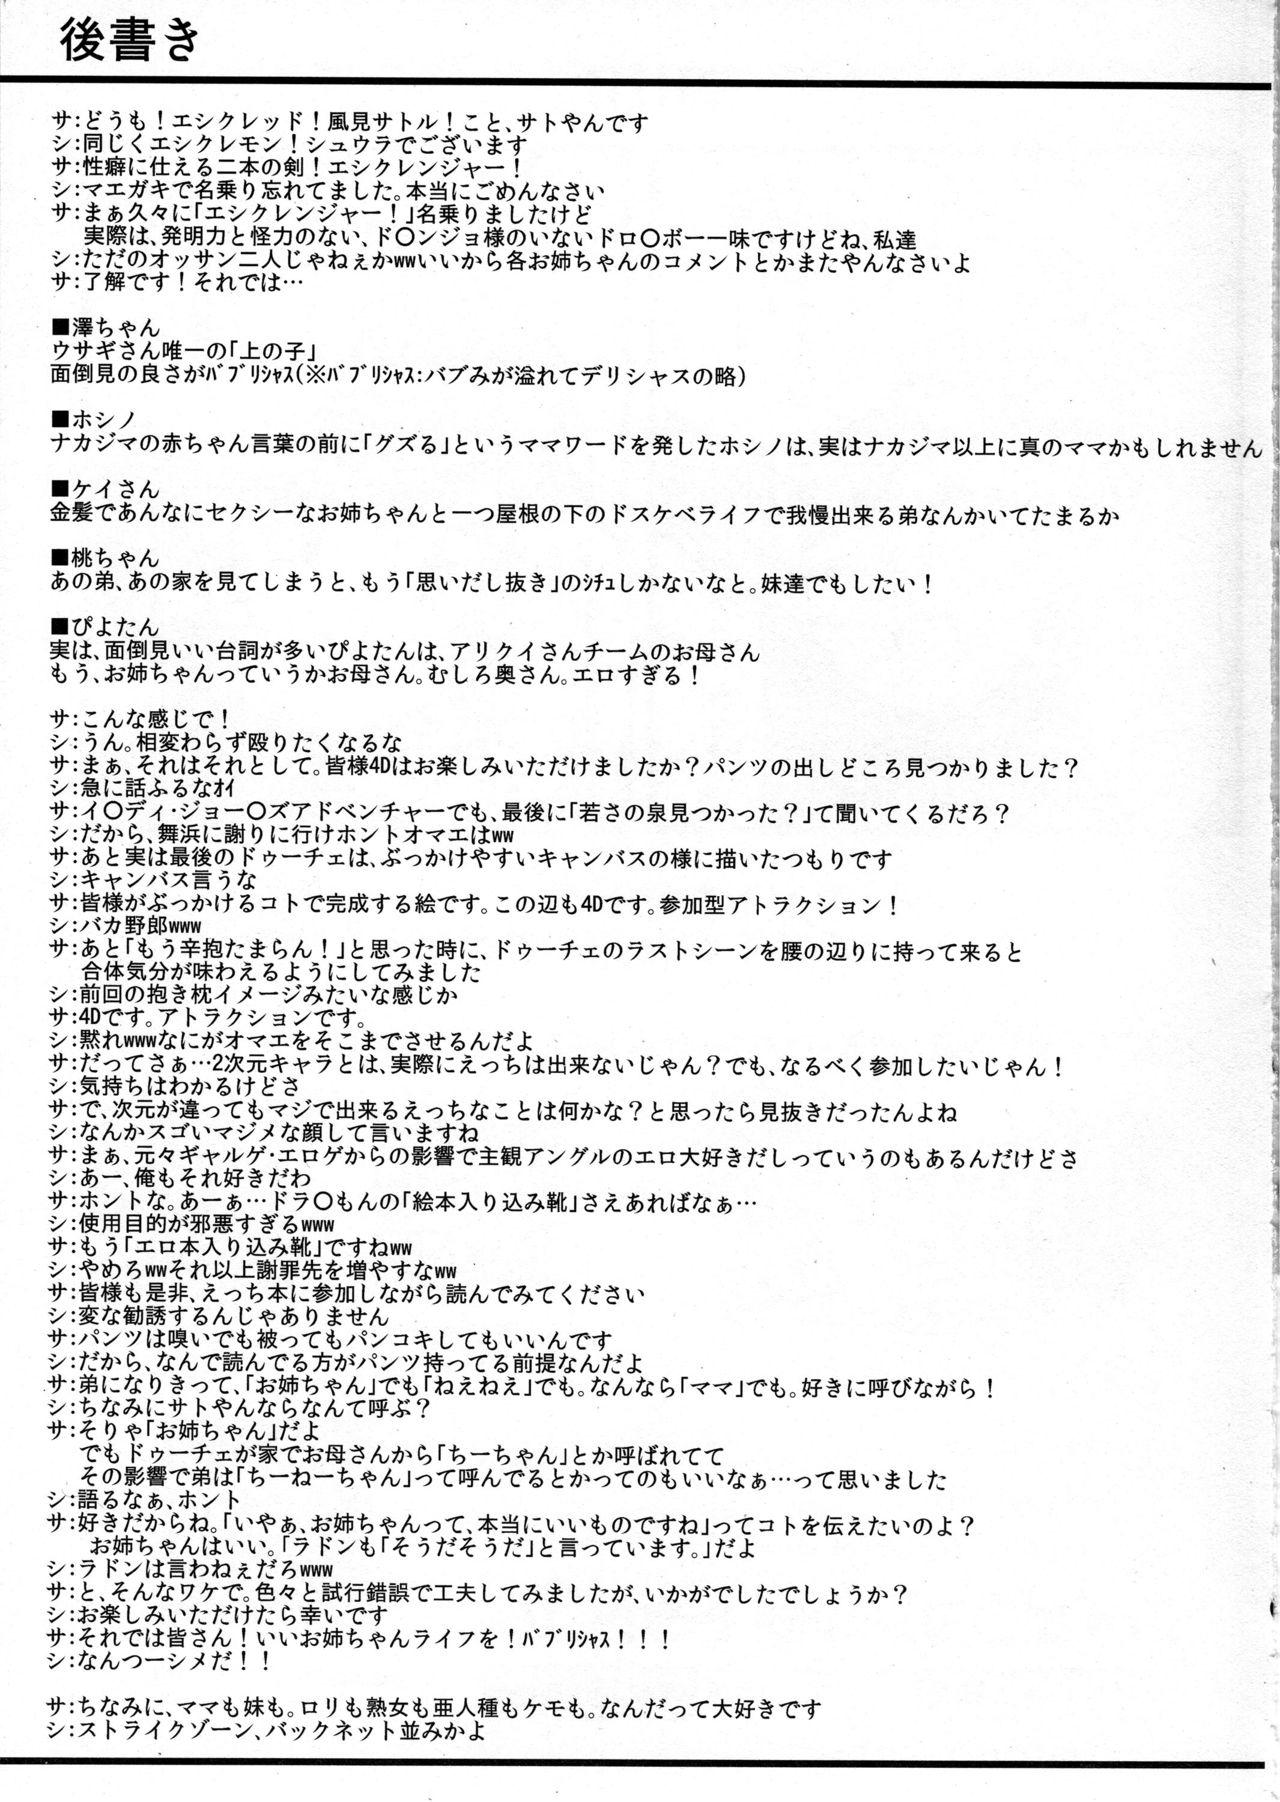 Travesti Neechan de MINUKI shiyouYO! 2 - Girls und panzer Teenporn - Page 22